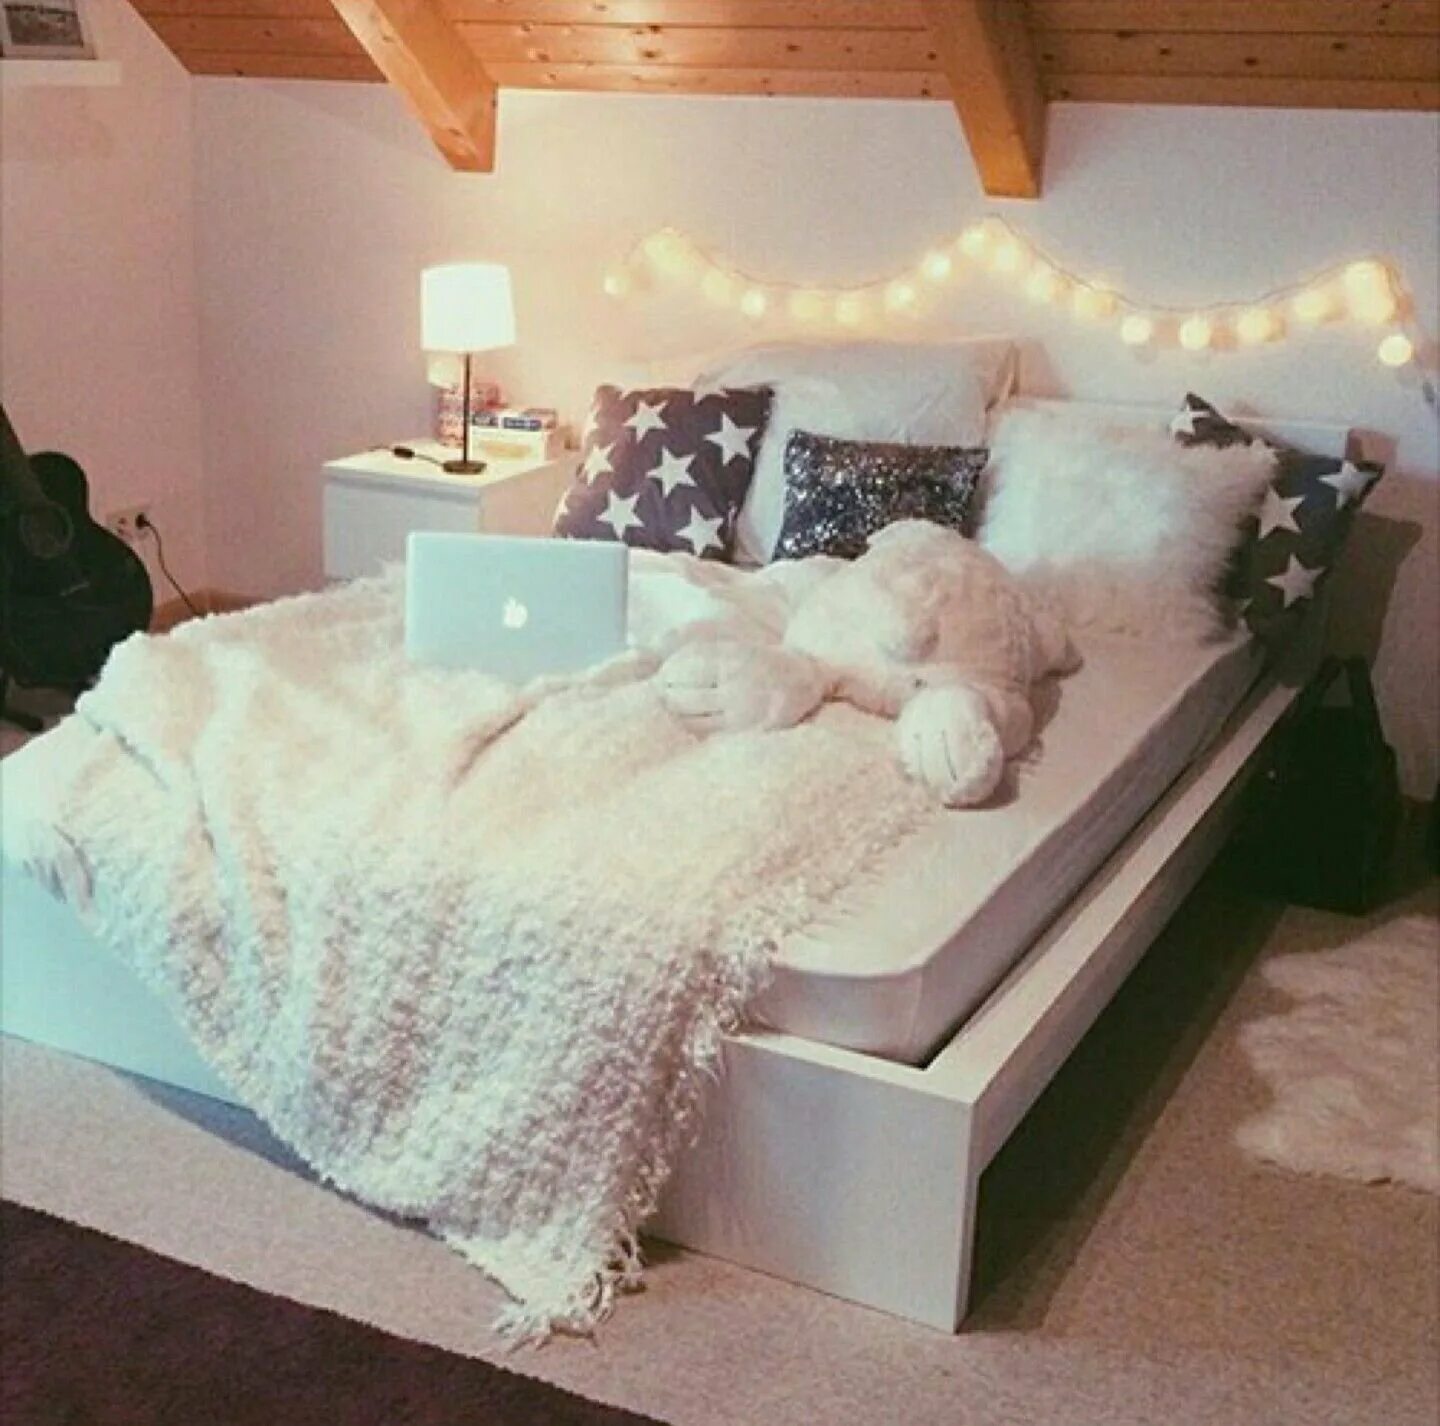 Свет на твоей кровати. Уютная спальня. Уютная кровать. Красивая большая кровать. Огромная кровать.